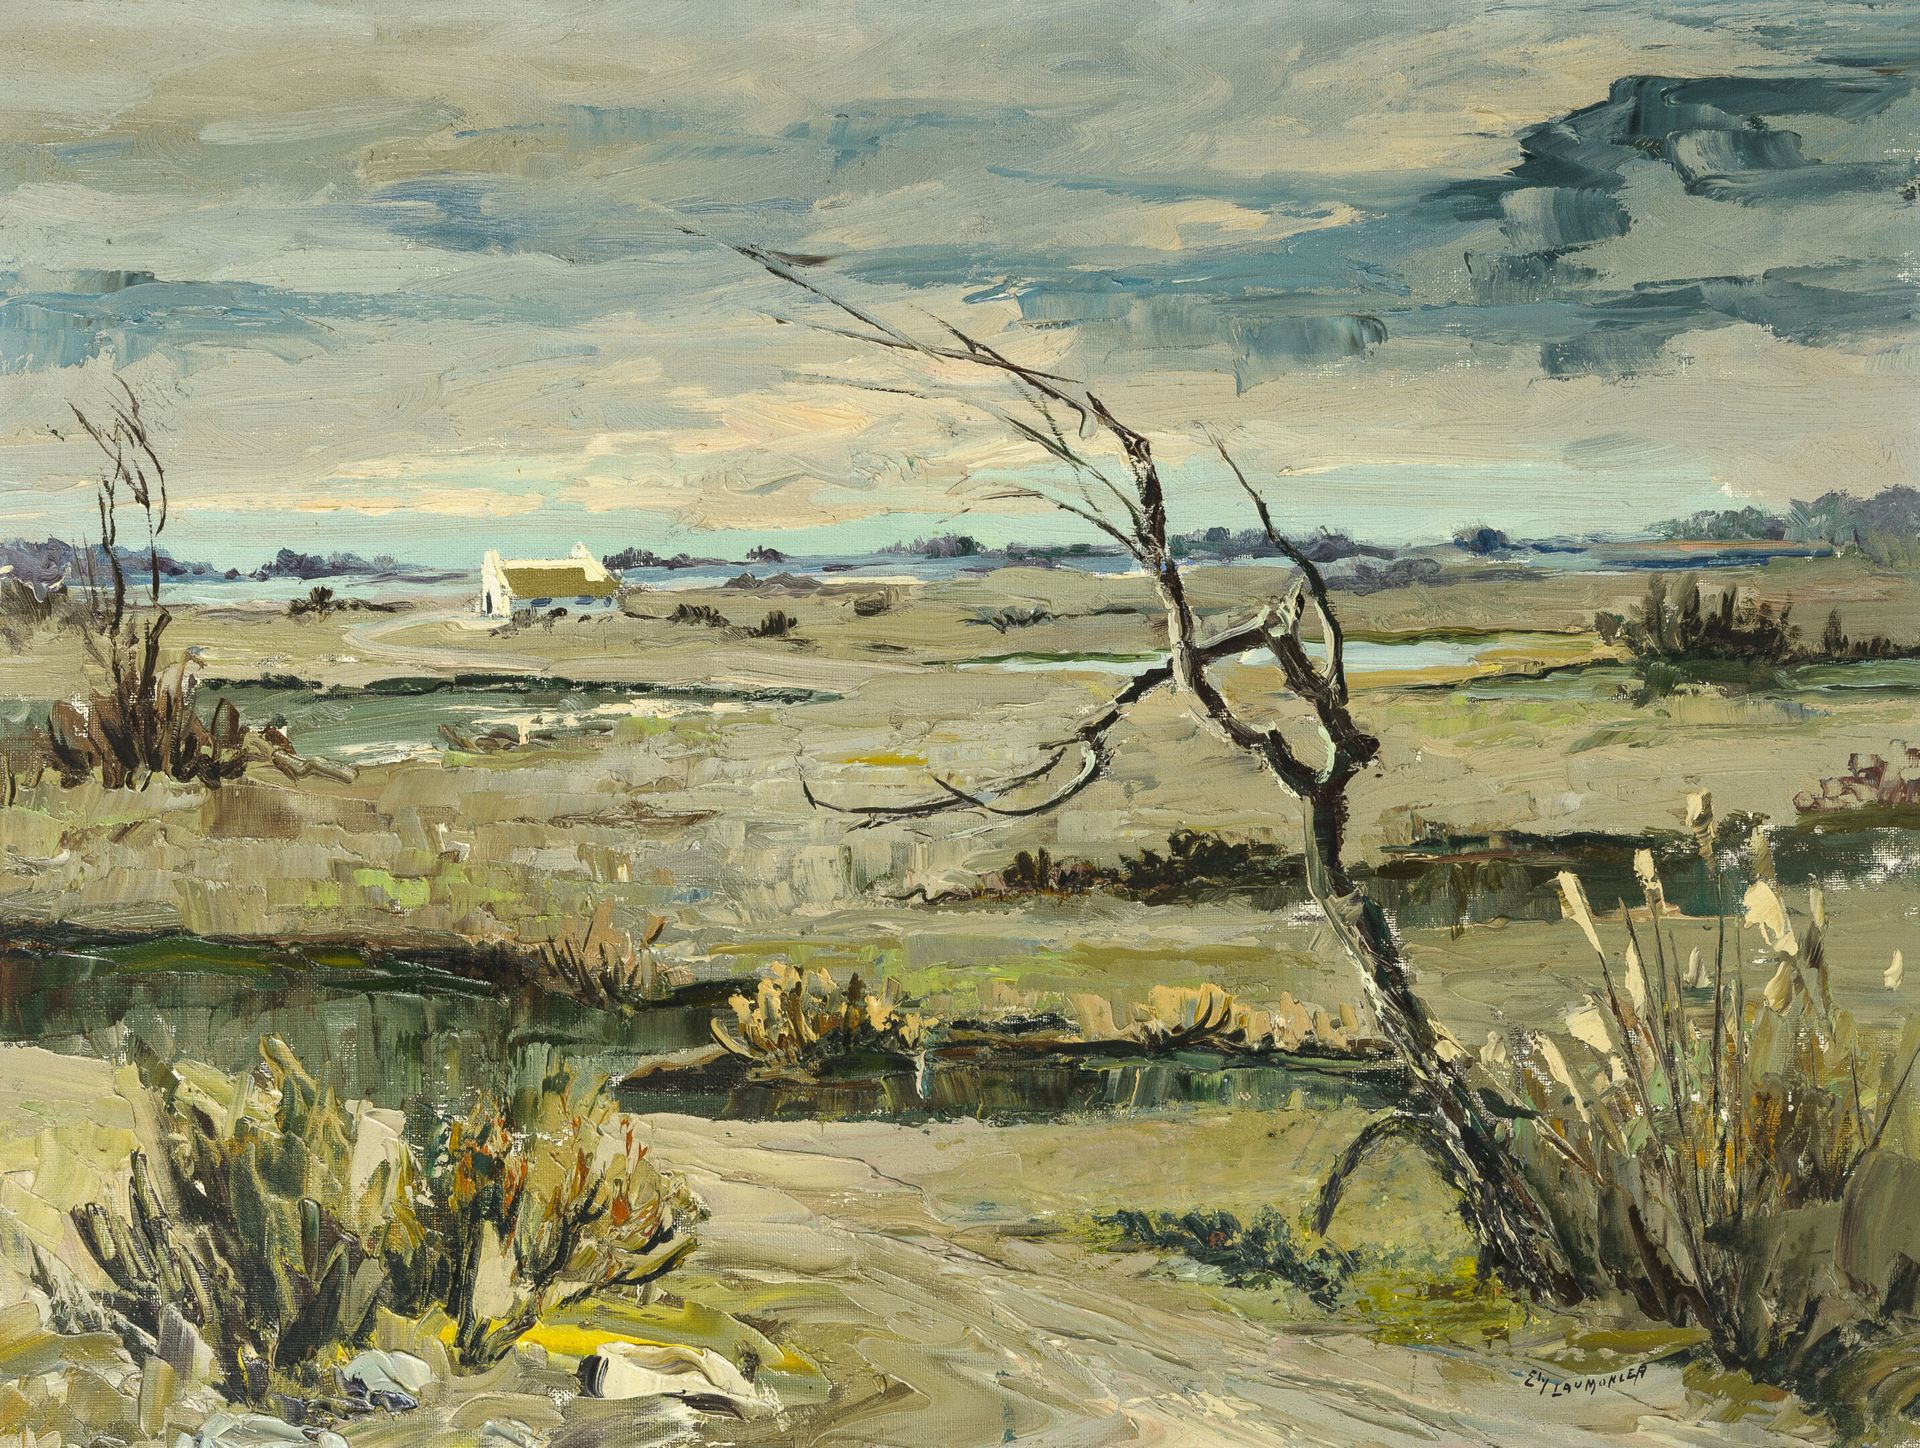 Ely LAUMONIER (1895-?) 卡马格地区的景观。

布面油画。

右下方有签名。

46 x 61厘米。

小污点和小裂缝。

恢复。